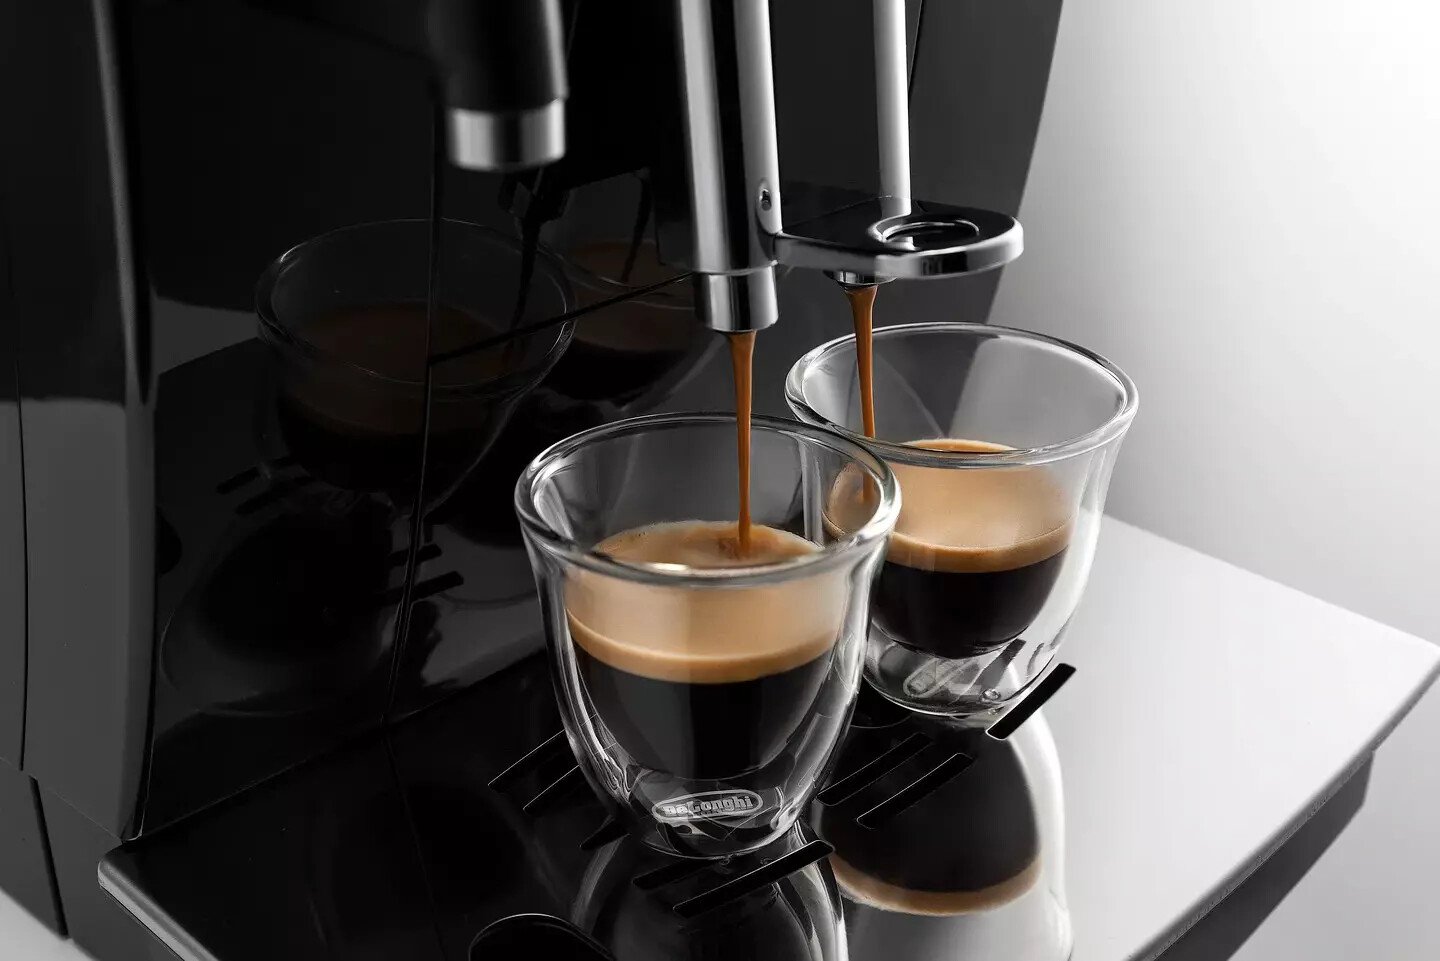 Cafetera espresso - DeLonghi ECAM 23.460.B, 15 bar, 1450 W 1.8 l, 14, –  Join Banana